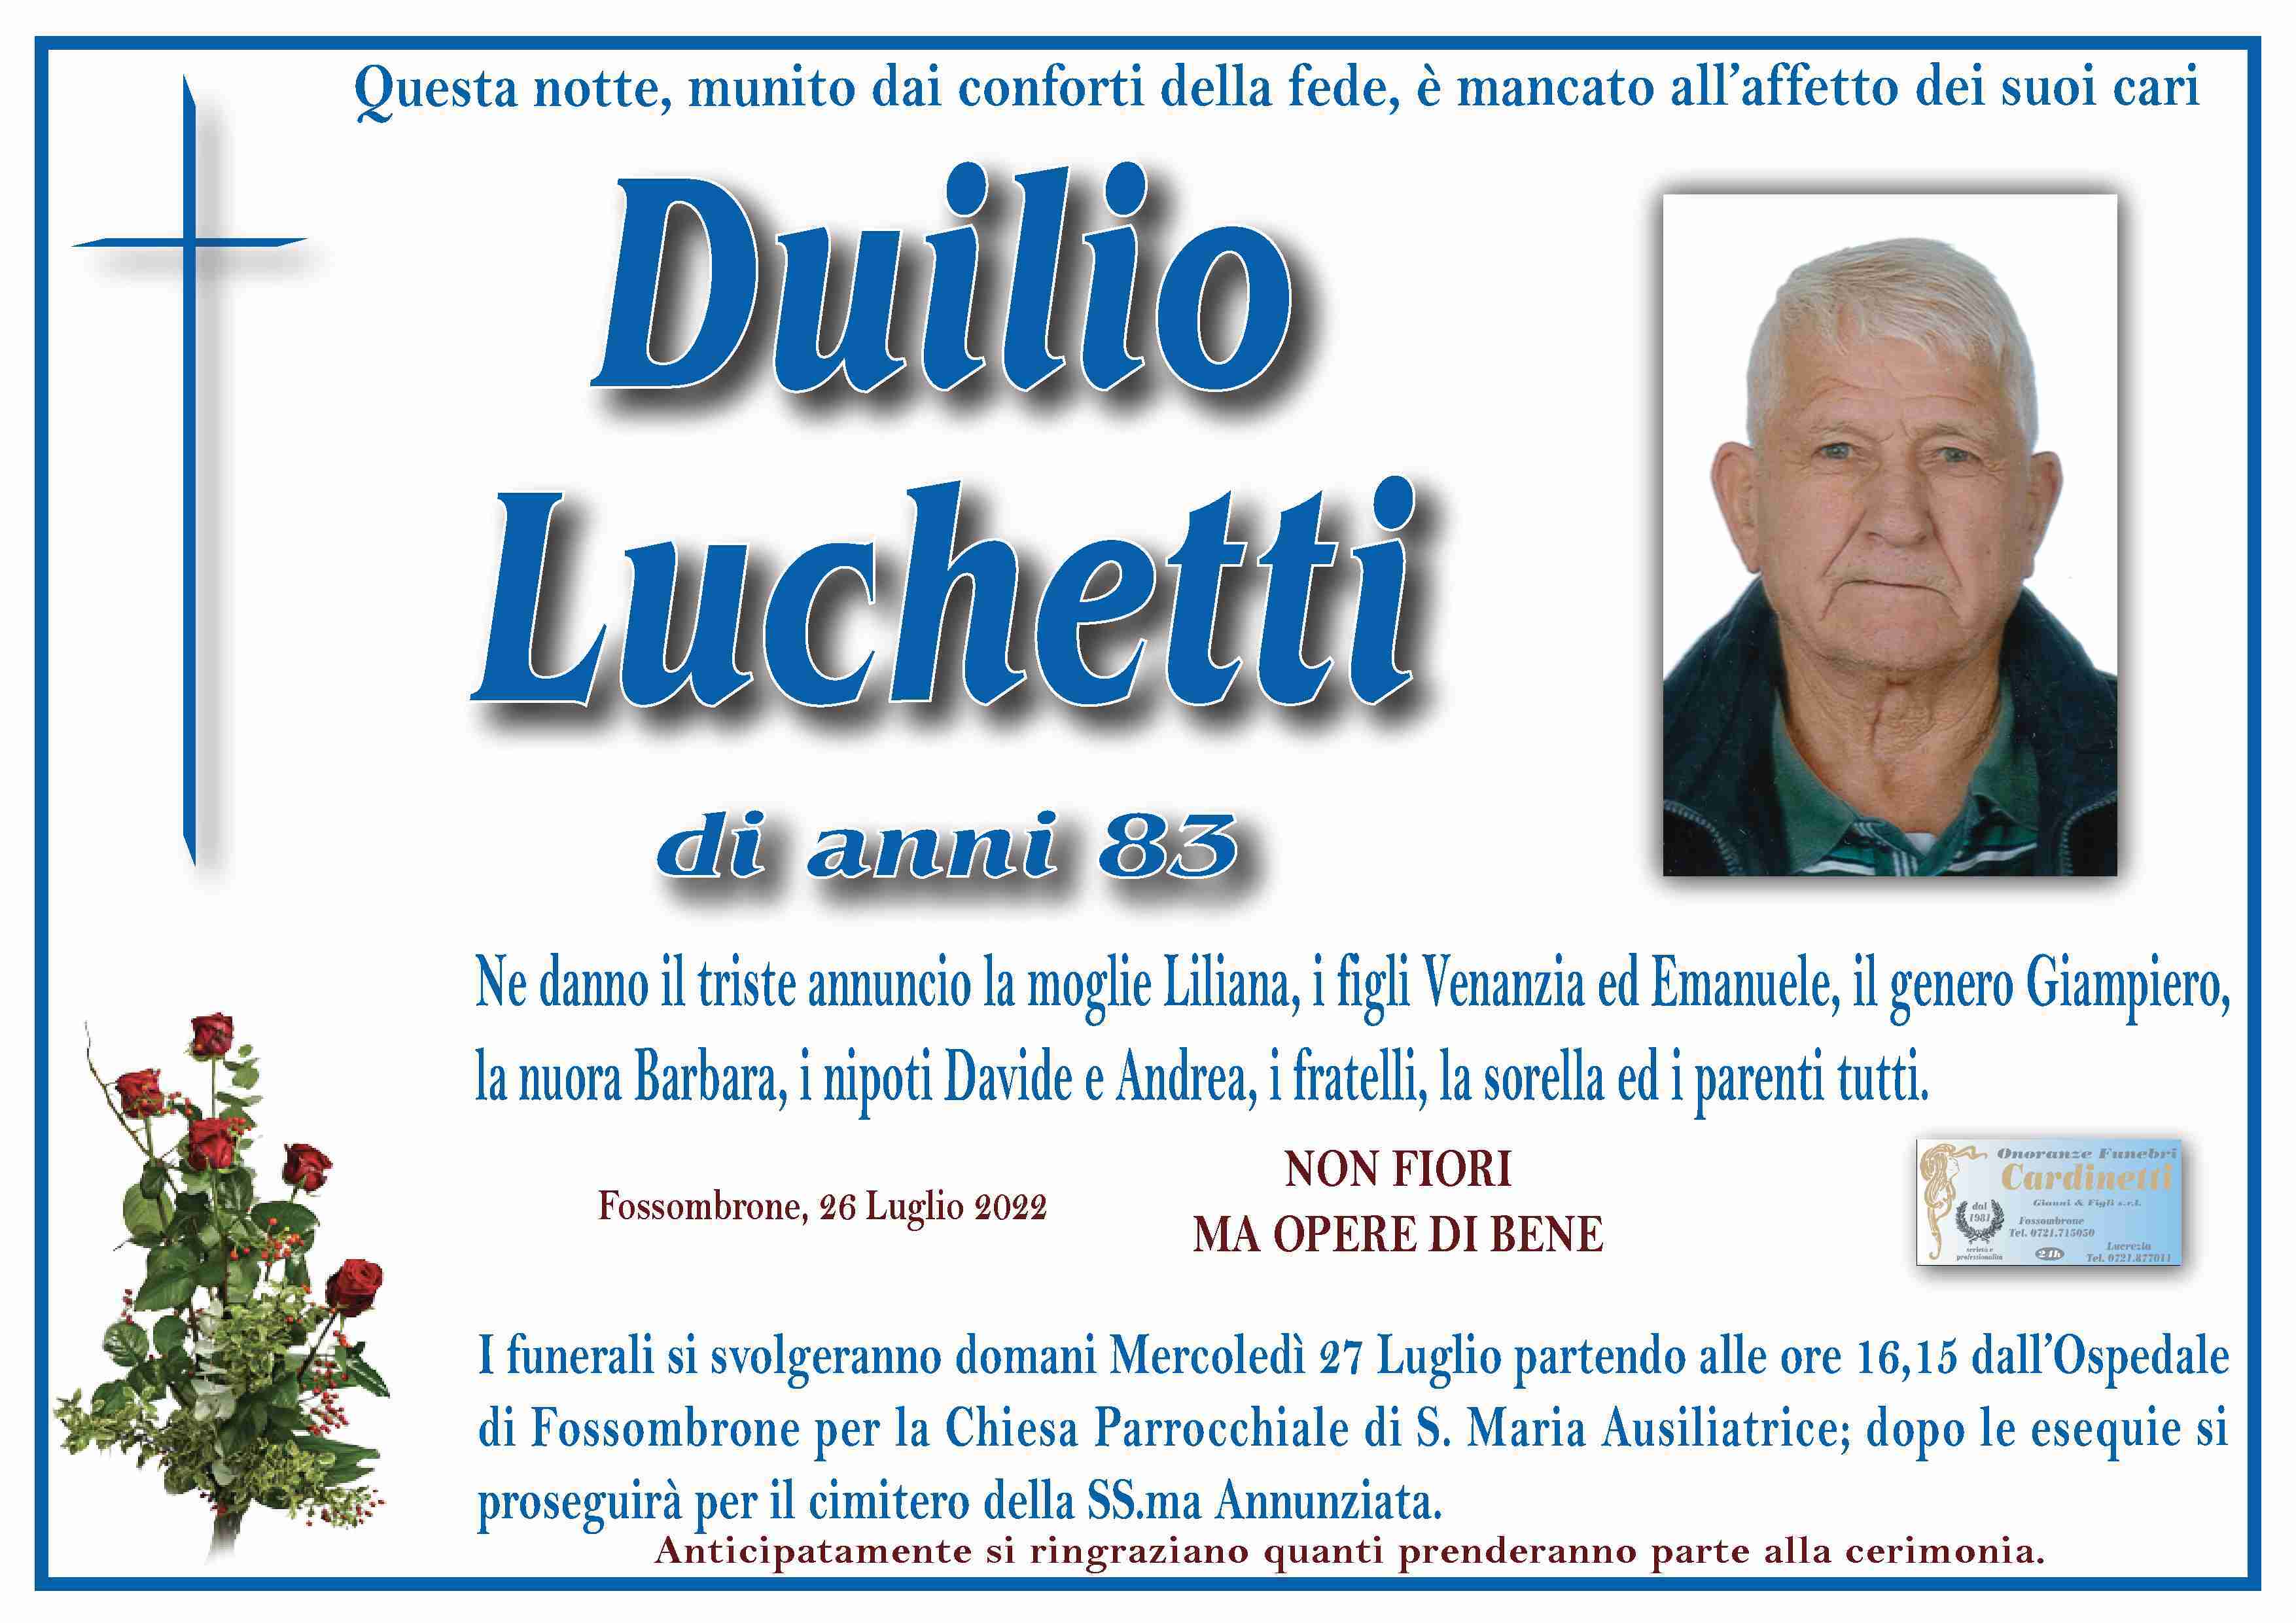 Duilio Luchetti